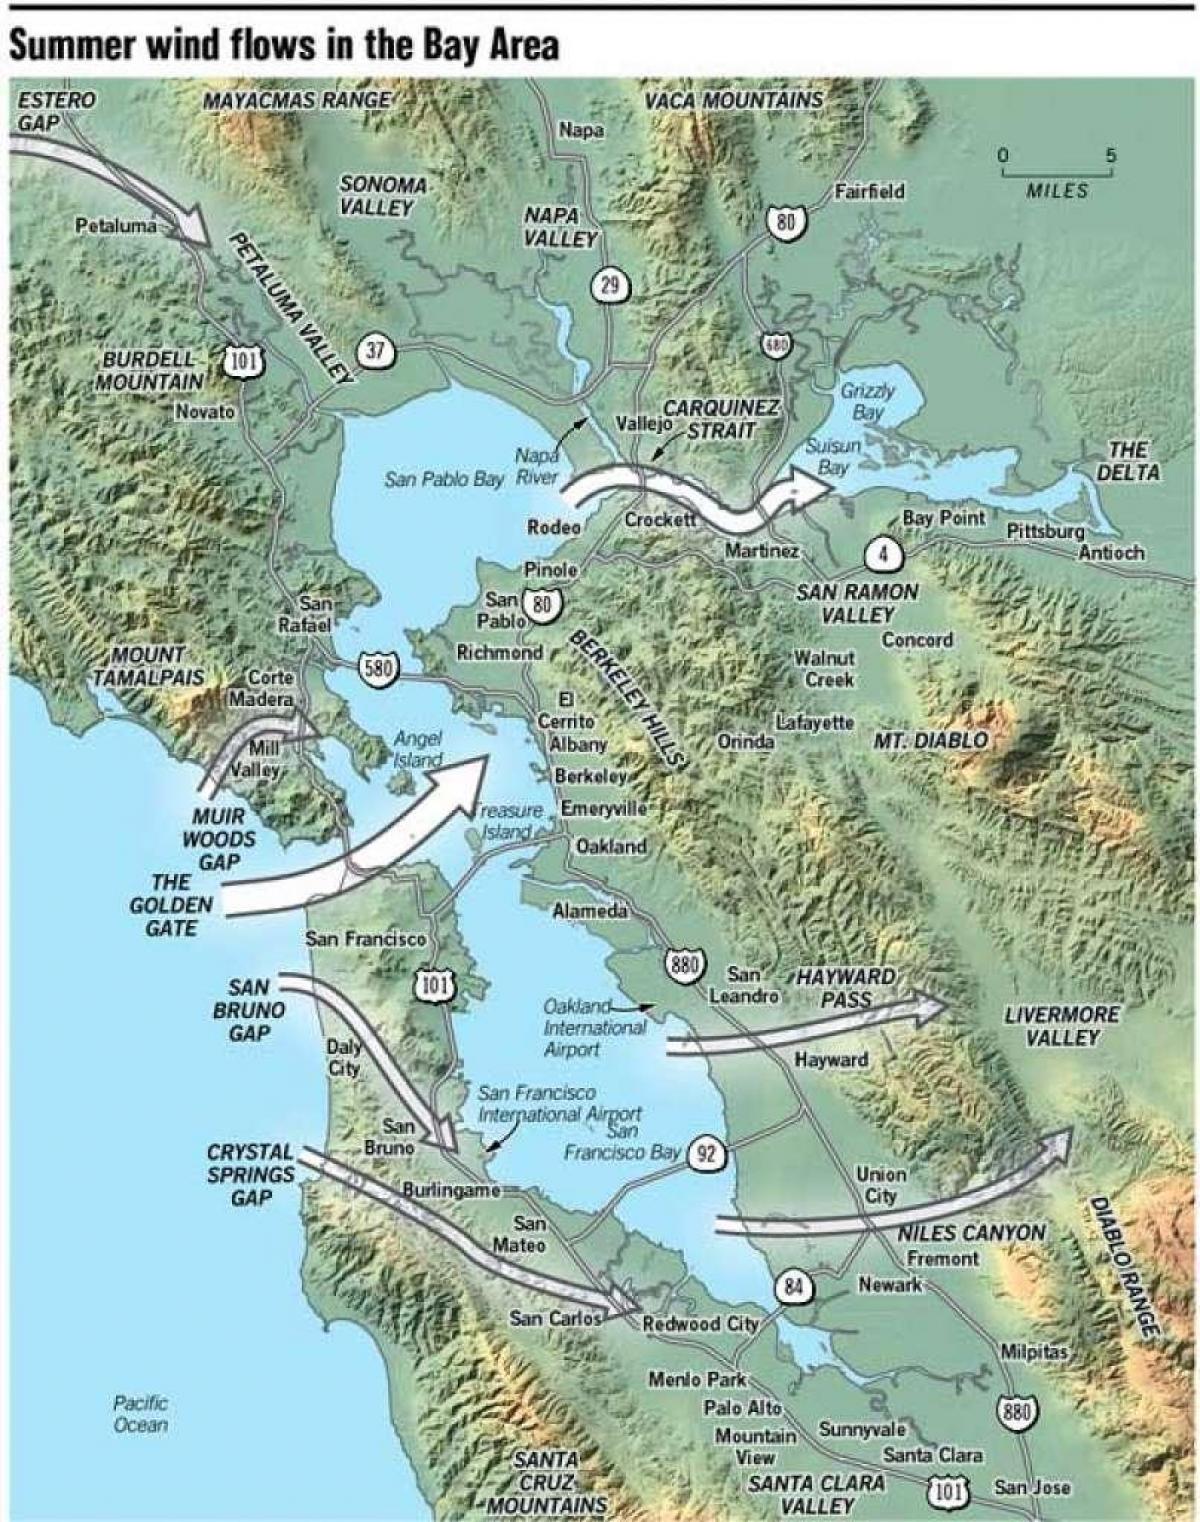 Քարտեզ Սան Ֆրանցիսկոյում միկրոկլիման